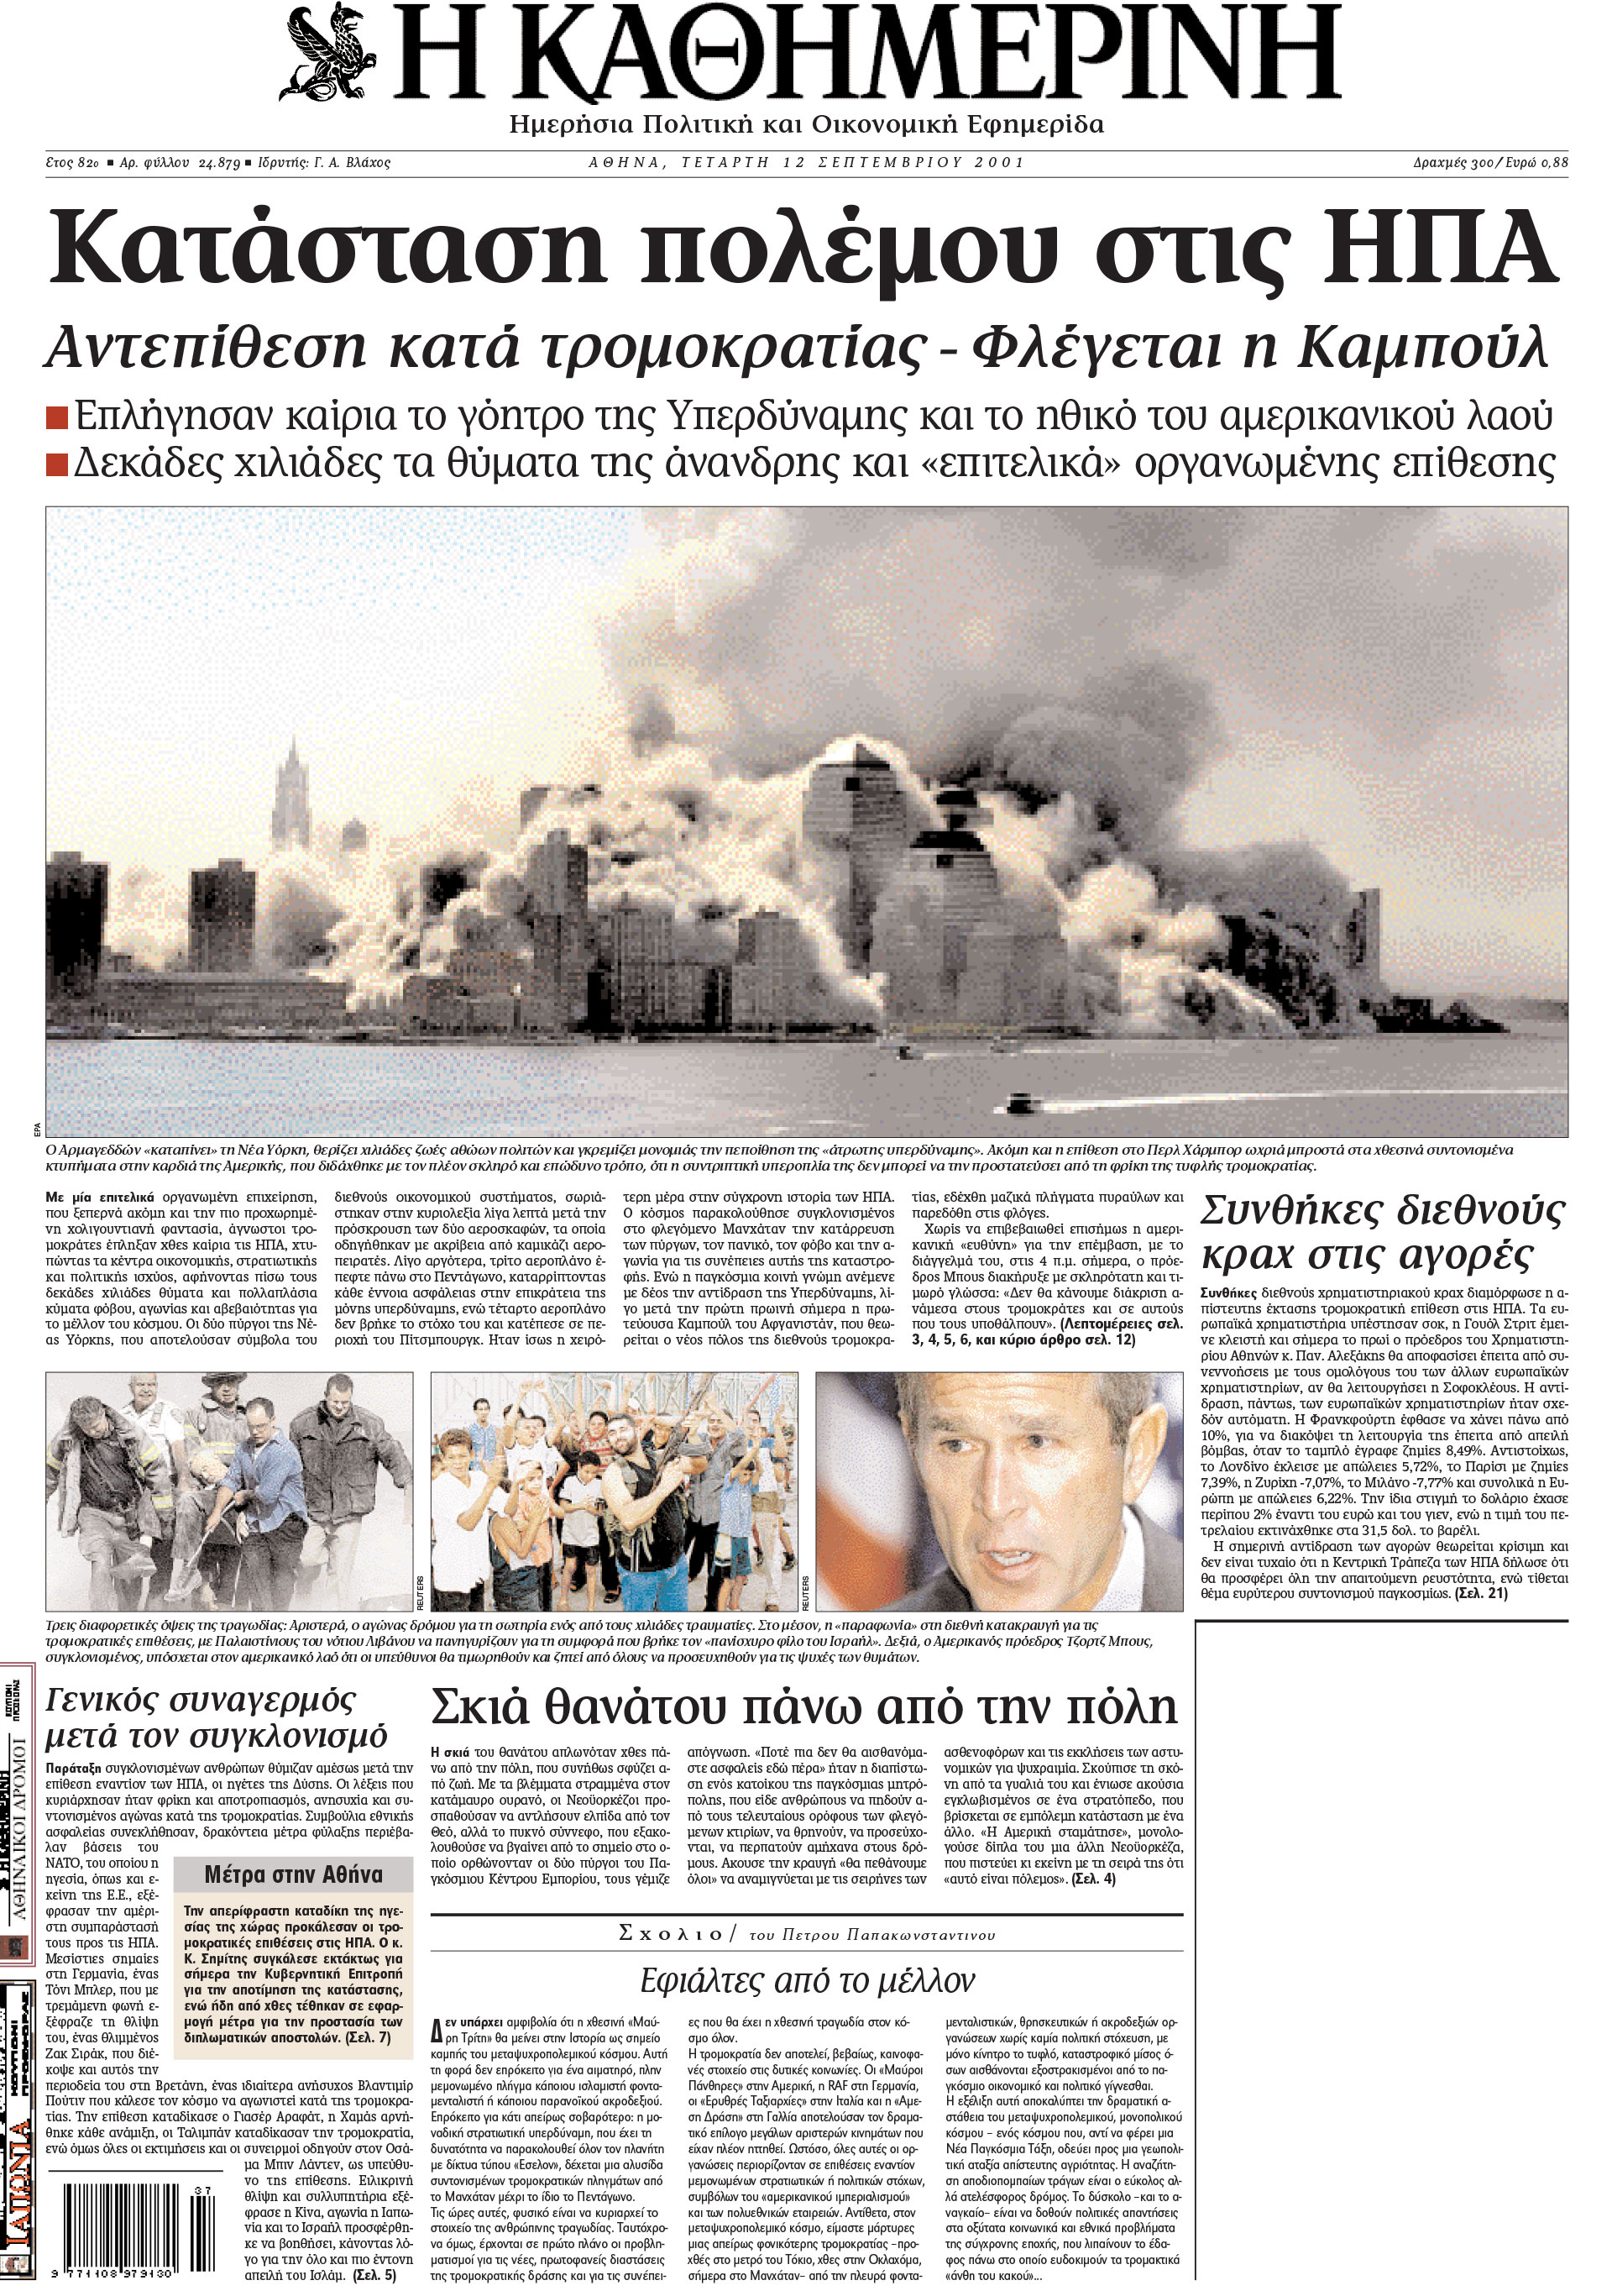 Σαν σήμερα: 11 Σεπτεμβρίου 2001 – Τρομοκρατικό χτύπημα στους Δίδυμους Πύργους-1